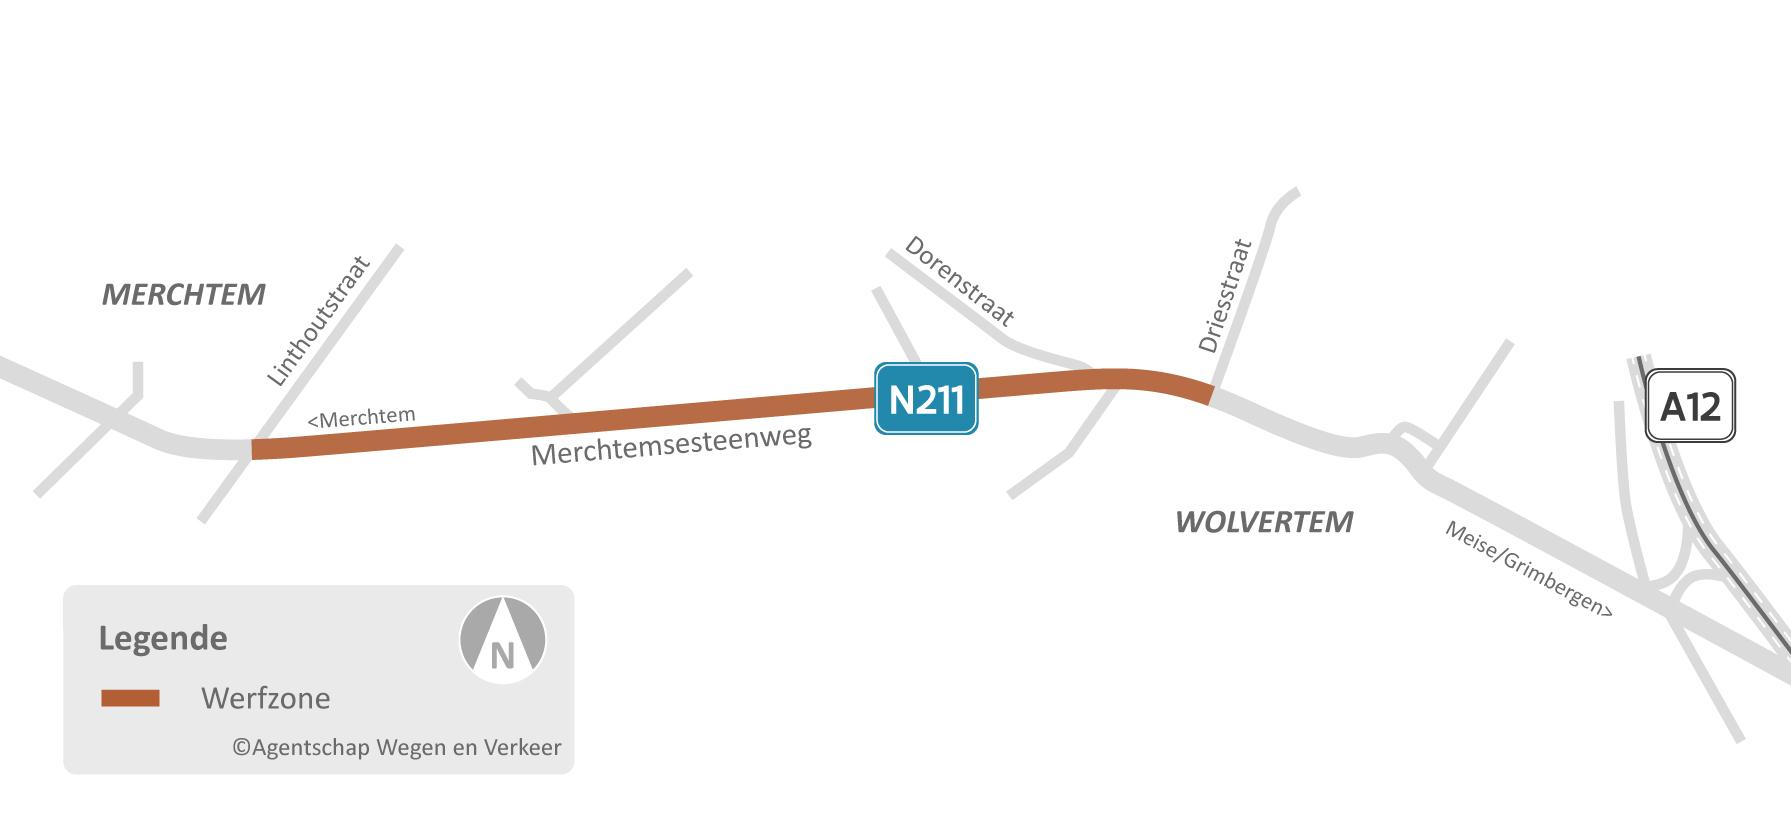 Situeringskaart  van de herinrichting van de Merchtemsesteenweg in Wolvertem en Merchtem